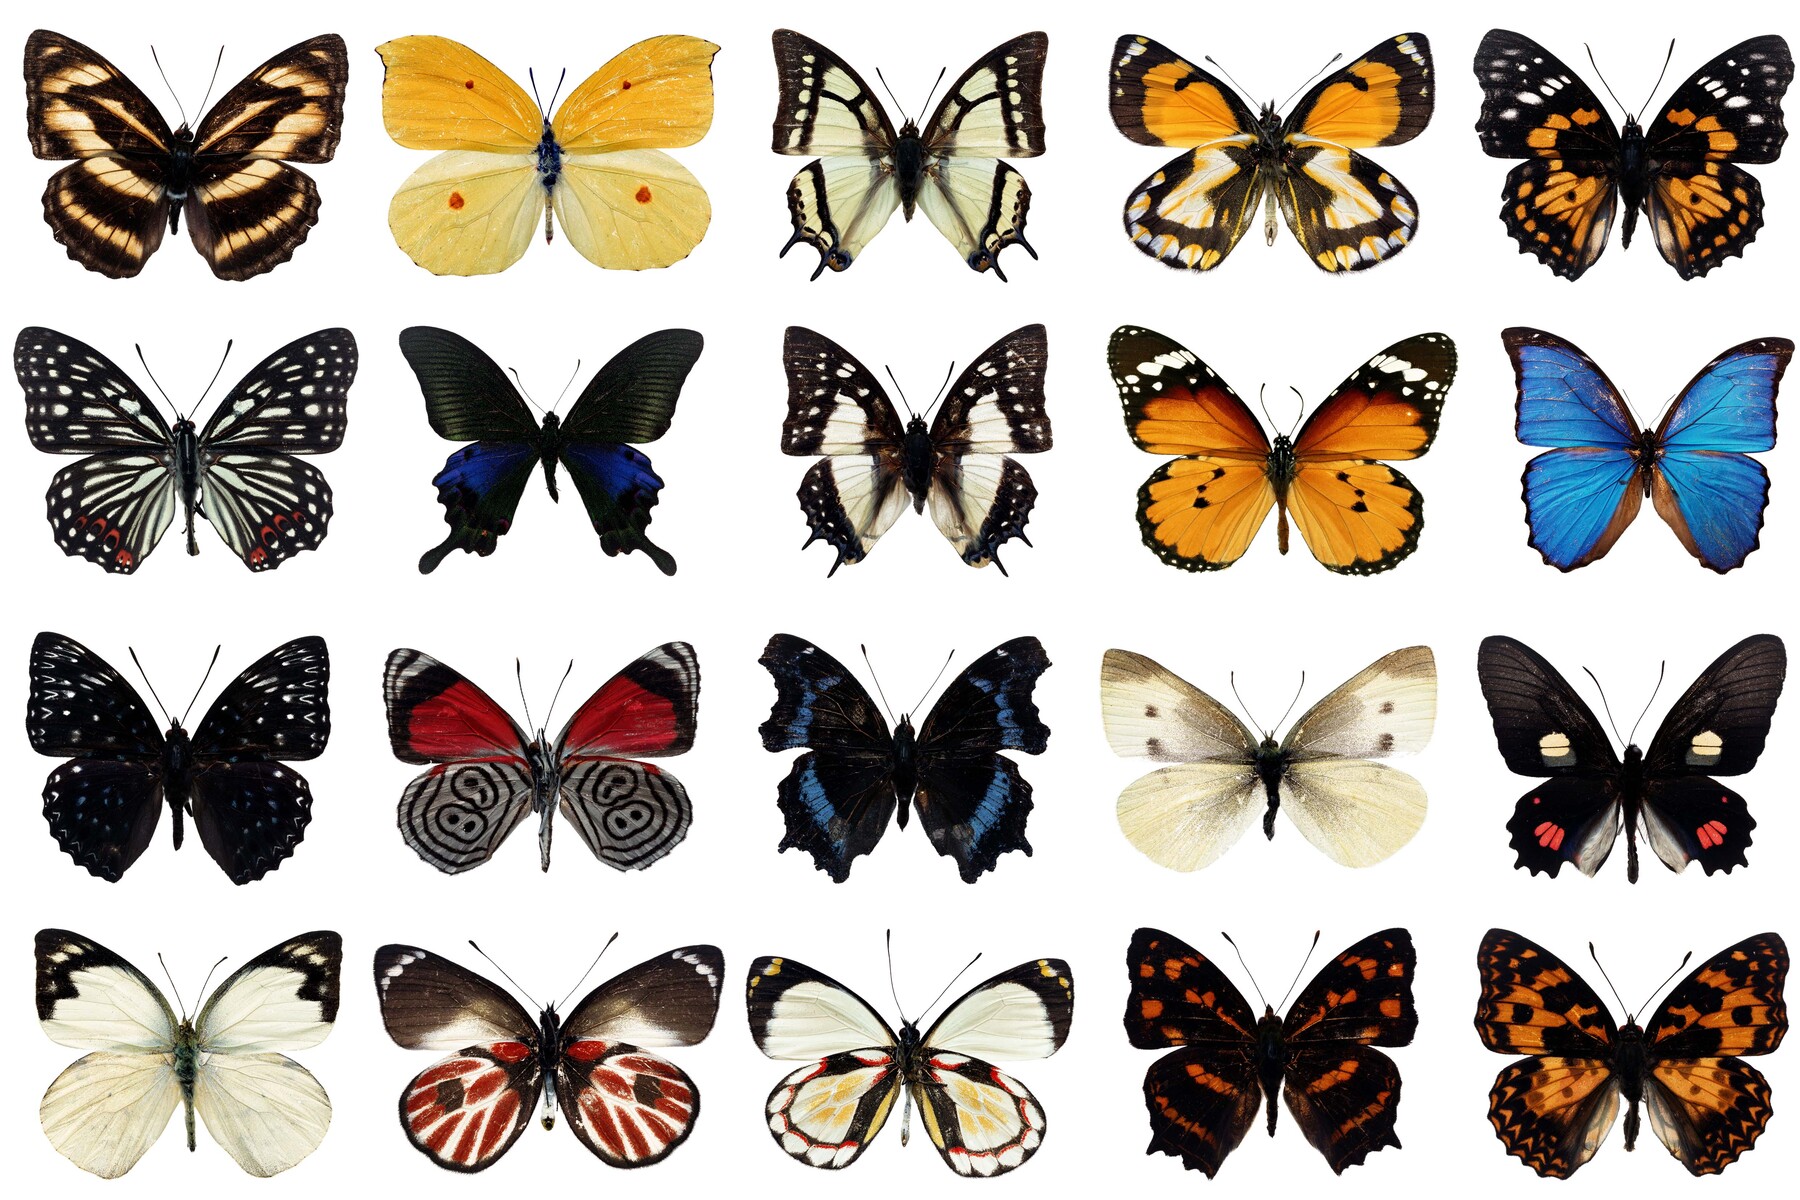 Название рисунков бабочки. Разнообразие бабочек. Название бабочек. Много видов бабочек. Названия бабочек с картинками.